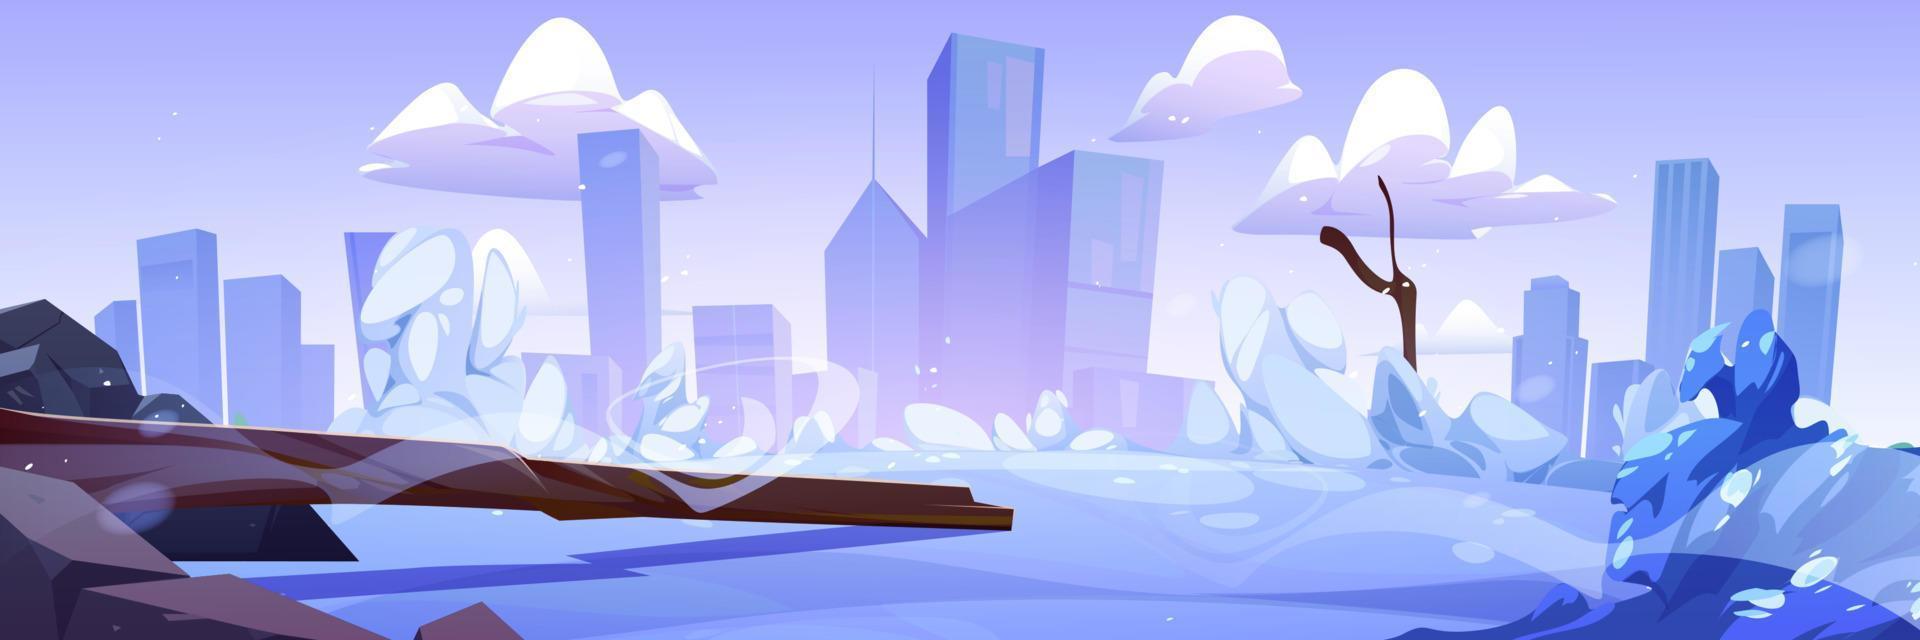 karikaturwinterlandschaft mit schneebedecktem stadtbild vektor